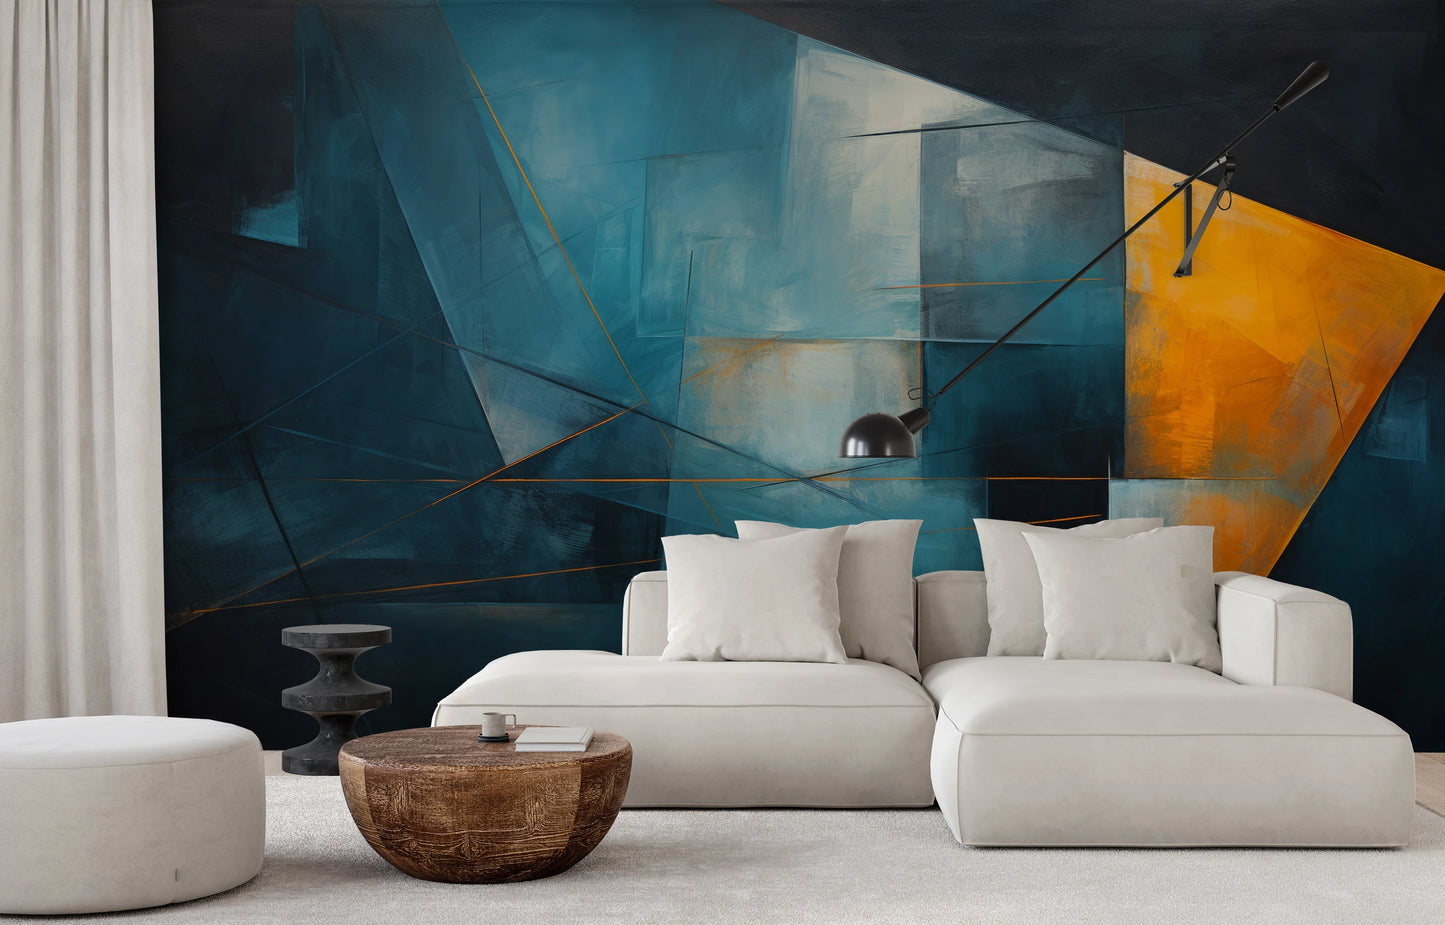 Fototapeta malowana o nazwie Azure Intersection pokazana w aranżacji wnętrza.